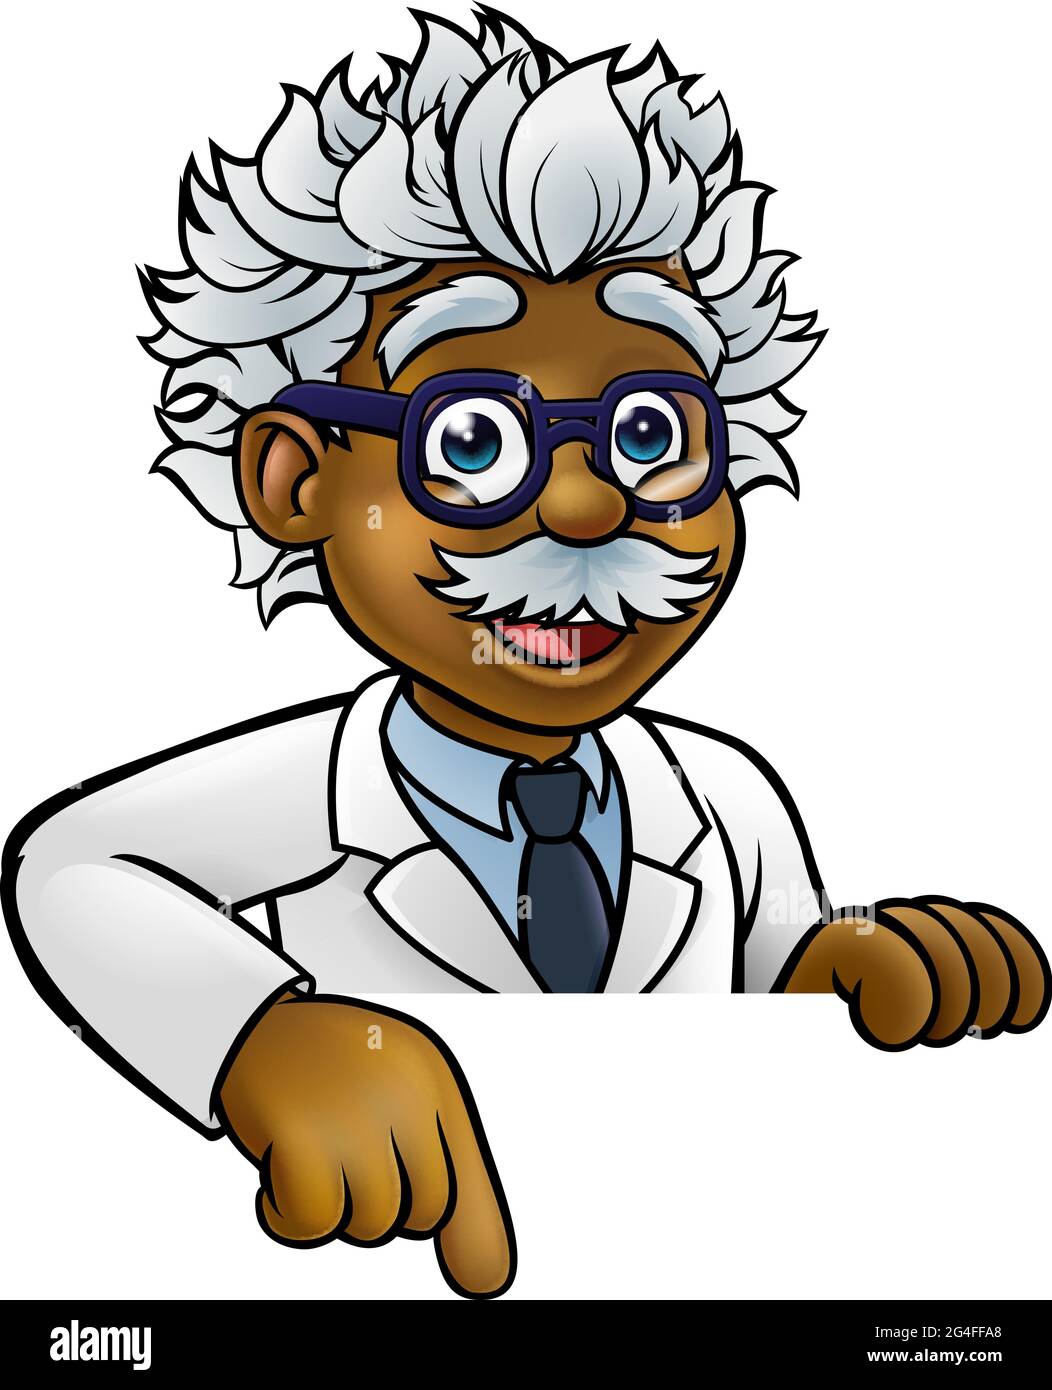 Personaggio dello scienziato Cartoon che punta verso il basso Illustrazione Vettoriale